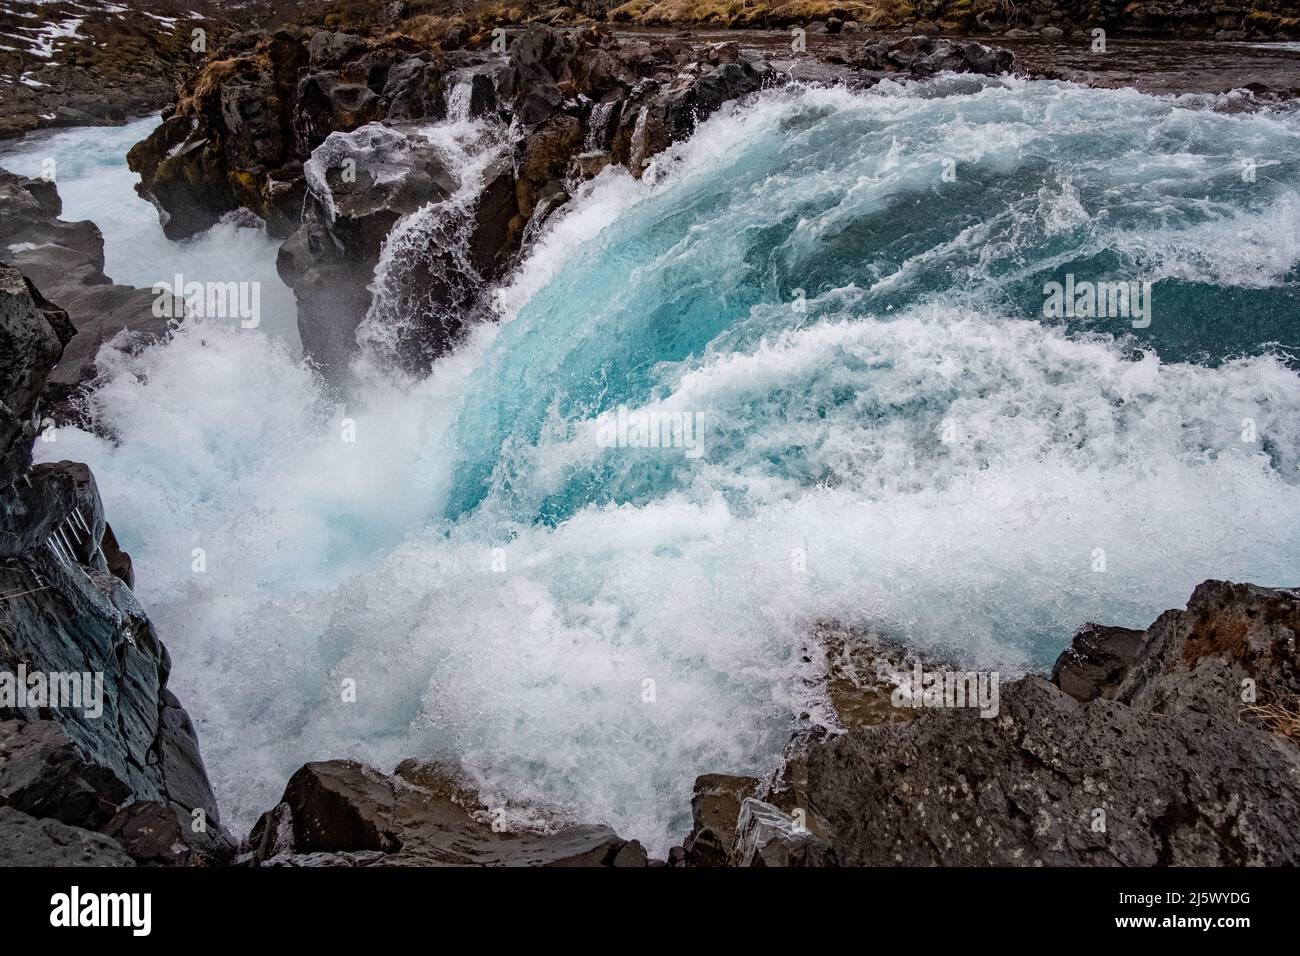 Wasserfall Hlauptungufoss im Golden Circle, île - une cascade bleue nommée 'Hlauptungufoss' dans le sud de l'Islande. Banque D'Images